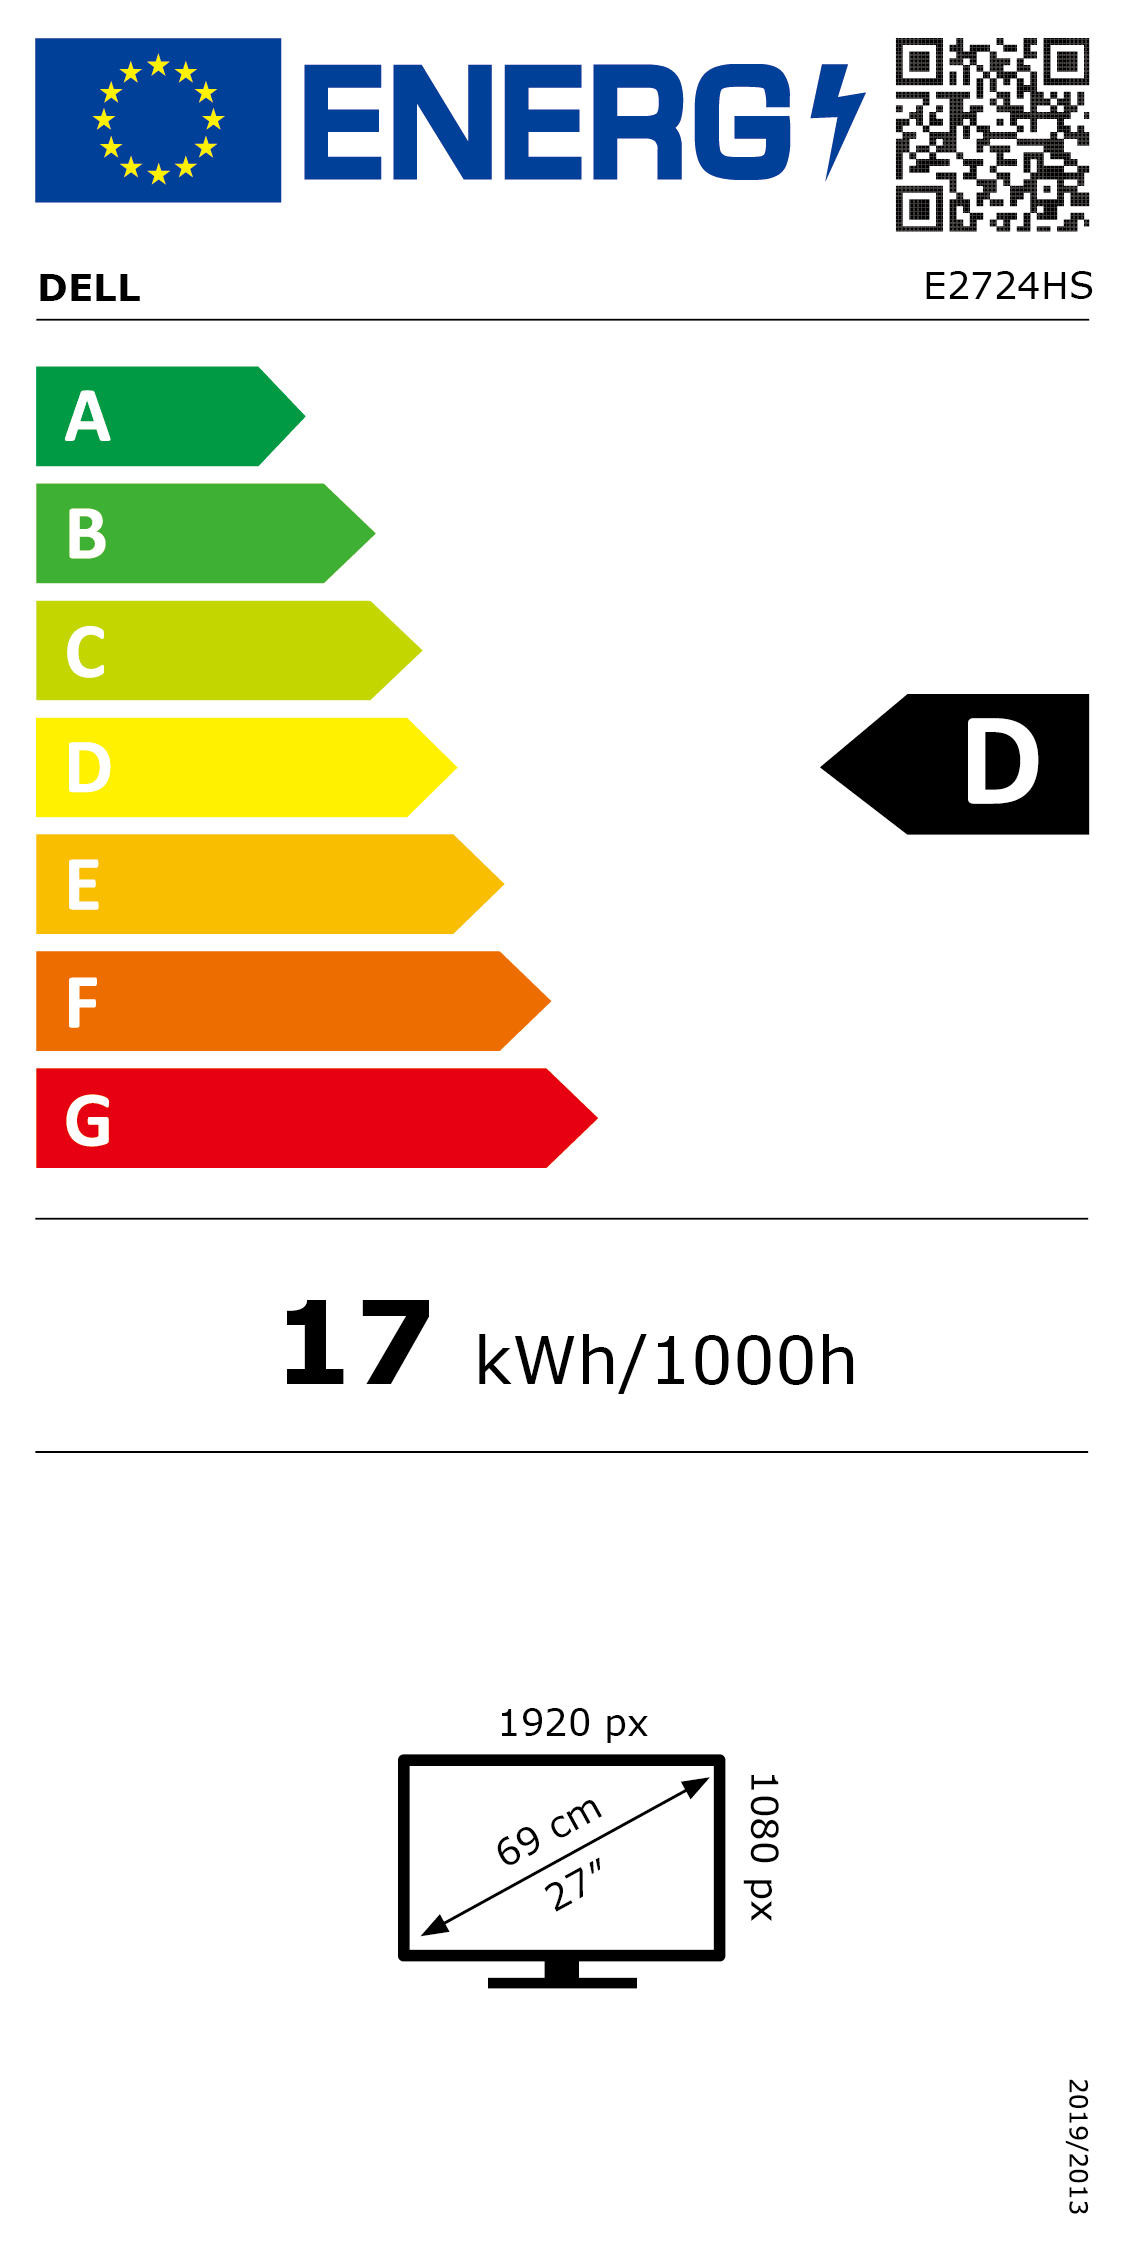 Escala energética de la UE: A (la más alta)/G (la más baja); clasificación de e2724hs: D, 17 kWh/1000 h; resolución: 1920 x 1080 px; medidas en diagonal: 27", 69 cm; código QR disponible en la imagen para obtener más información